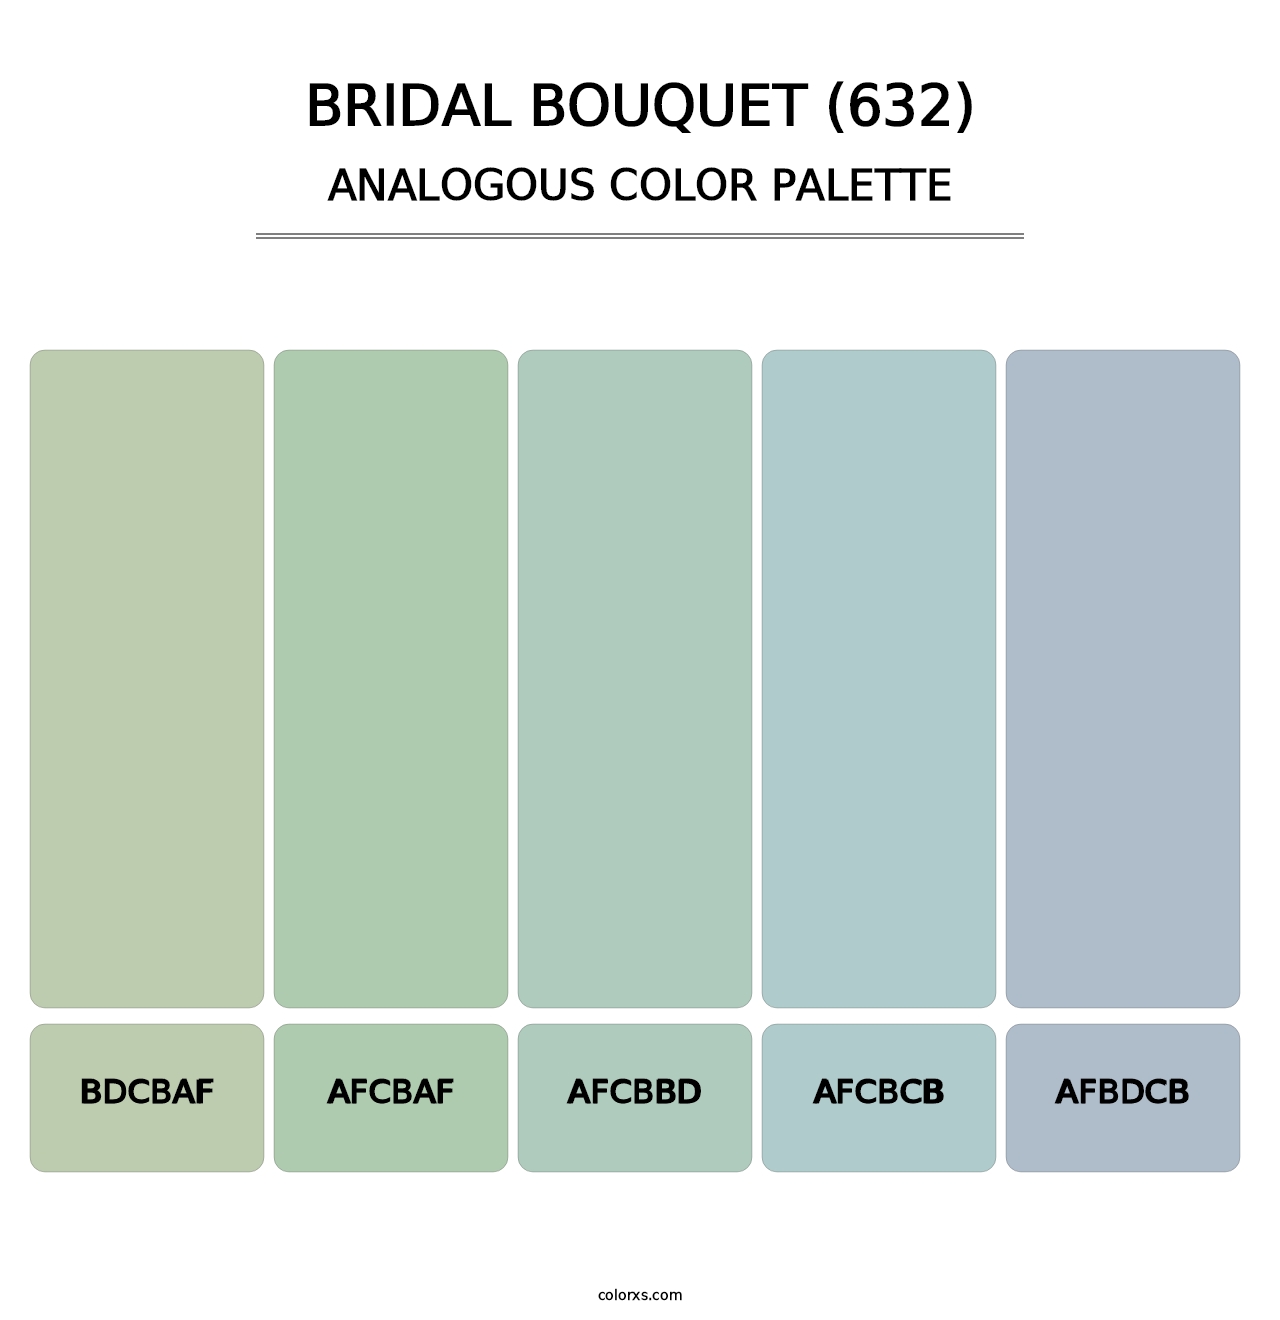 Bridal Bouquet (632) - Analogous Color Palette